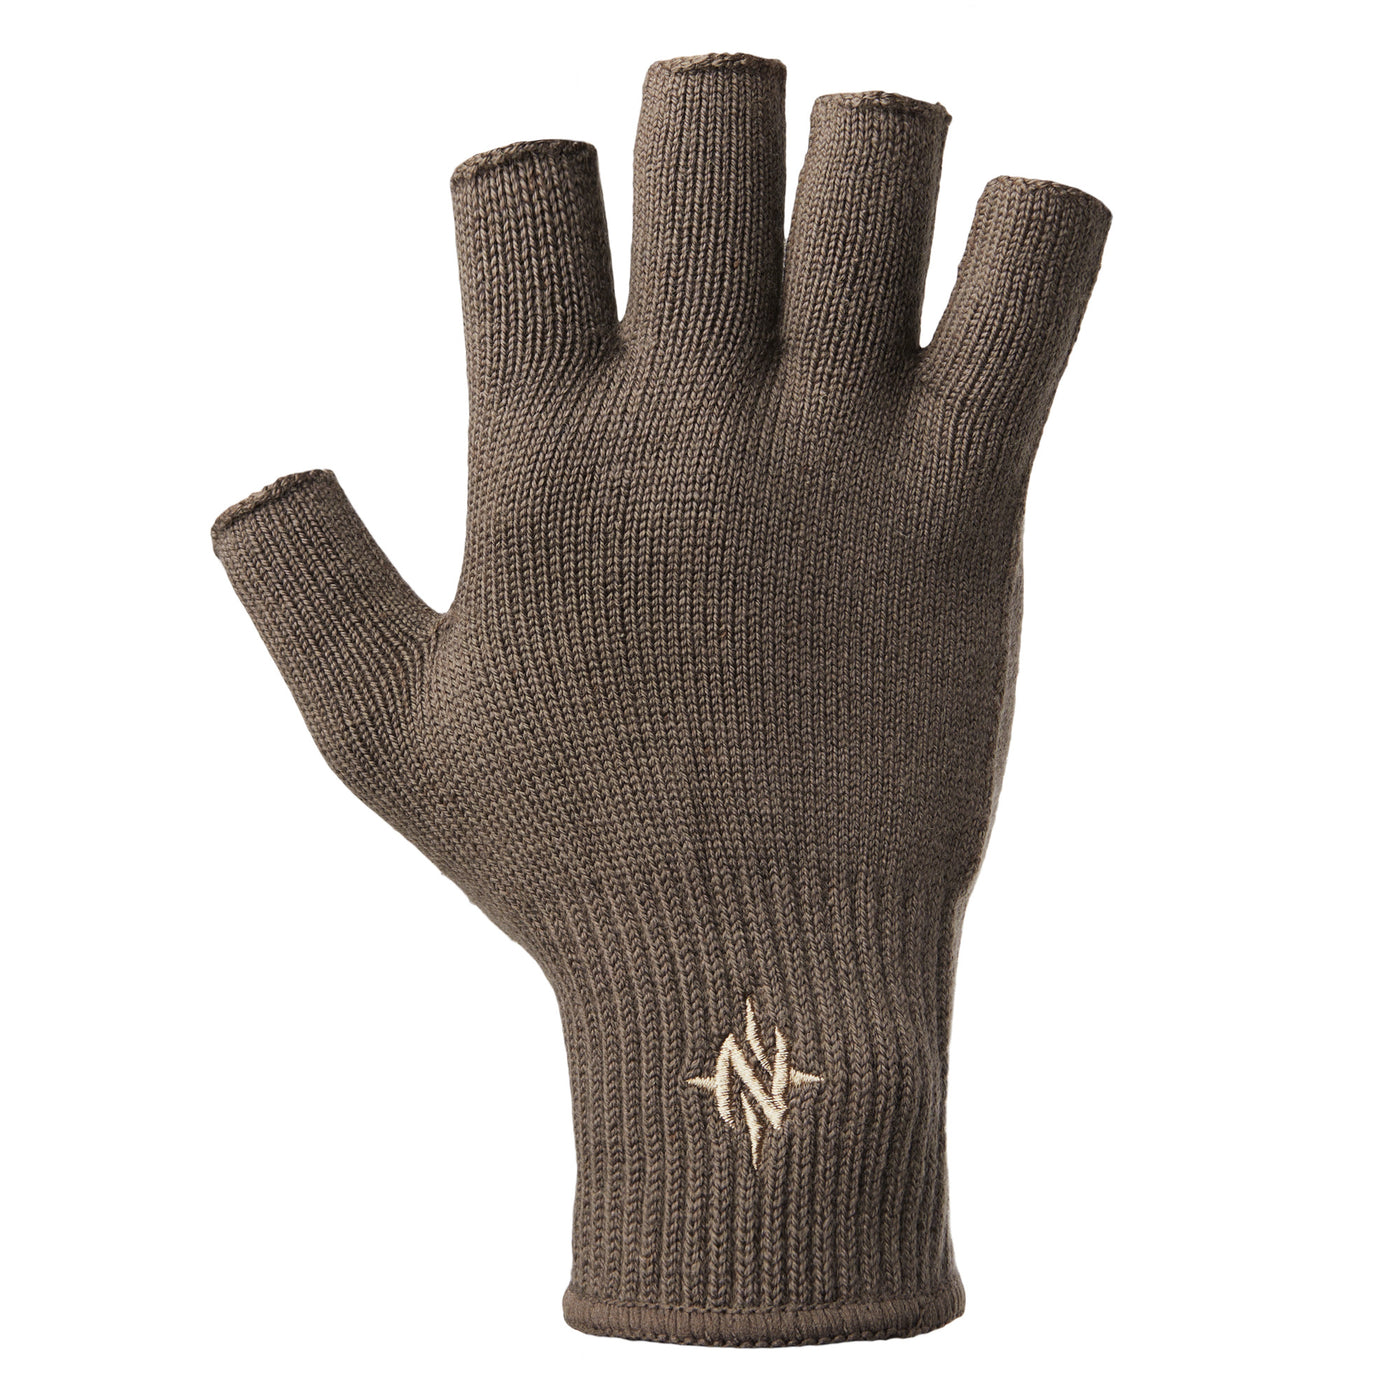 Nomad Durawool Glove